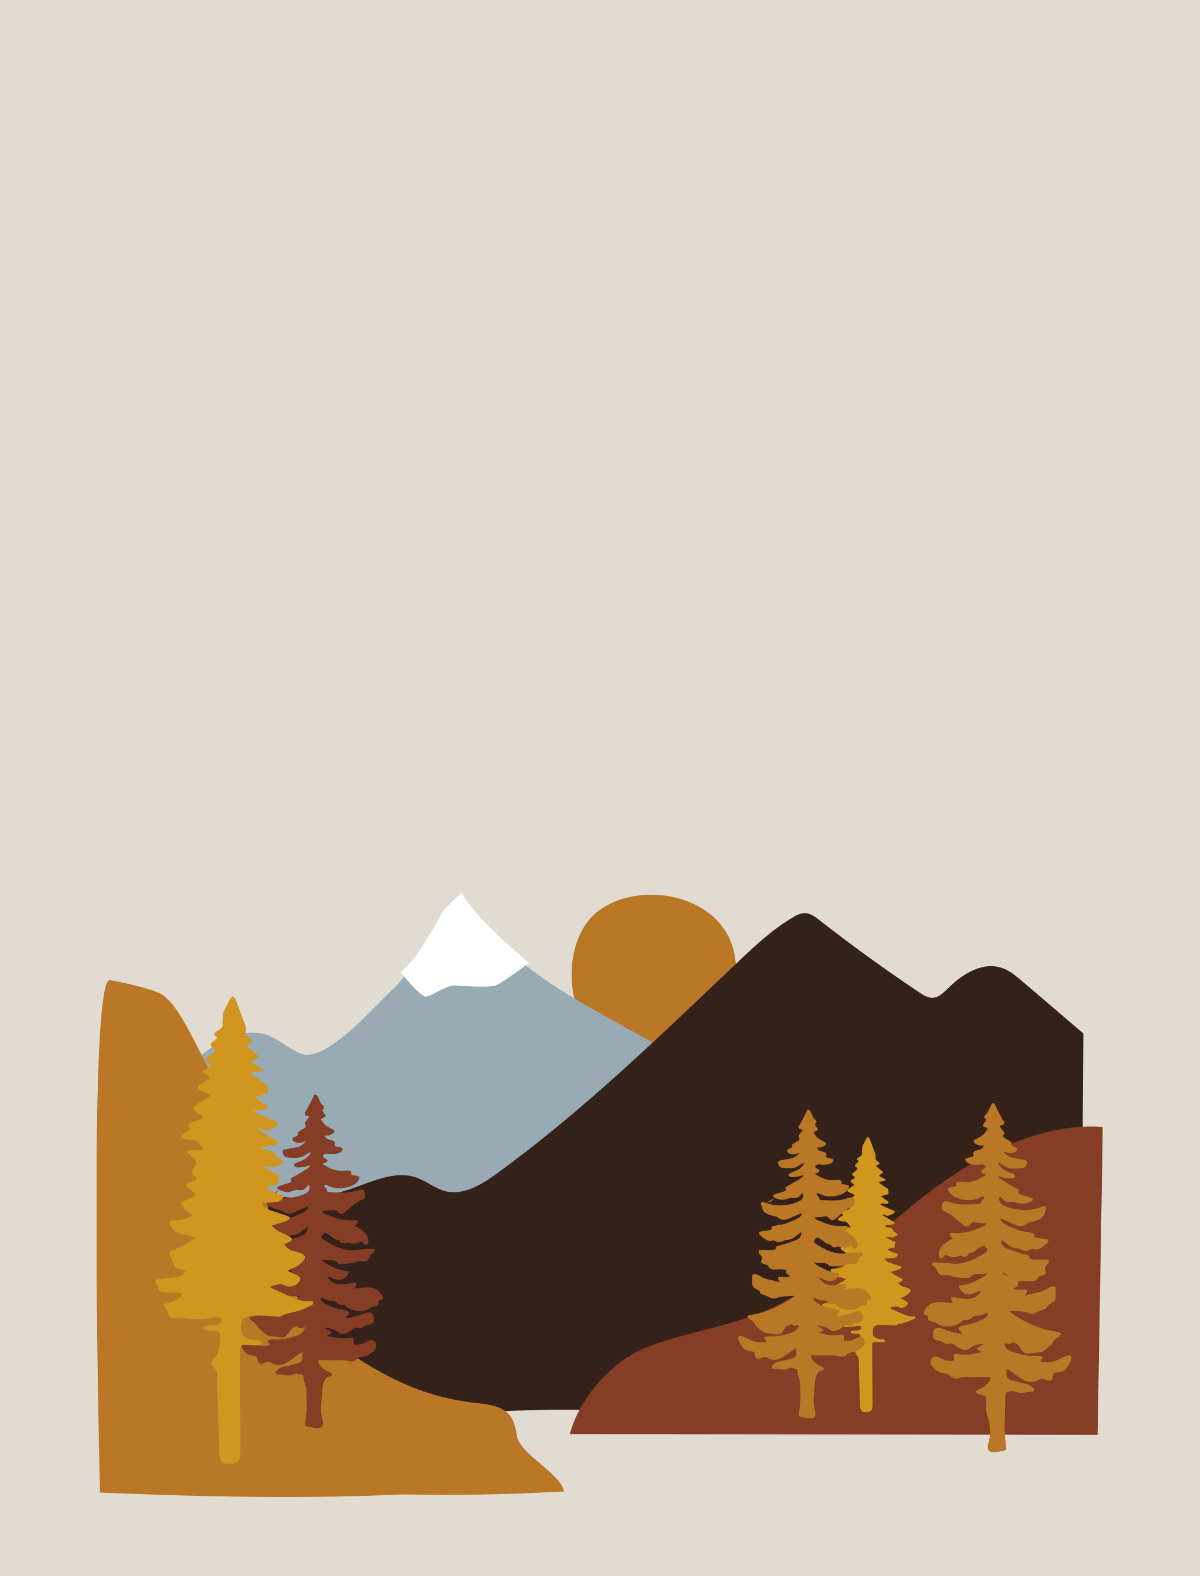 Illustrierte Berge im Herbst mit Sonnenaufgang für Roadtyping Startseite mobile